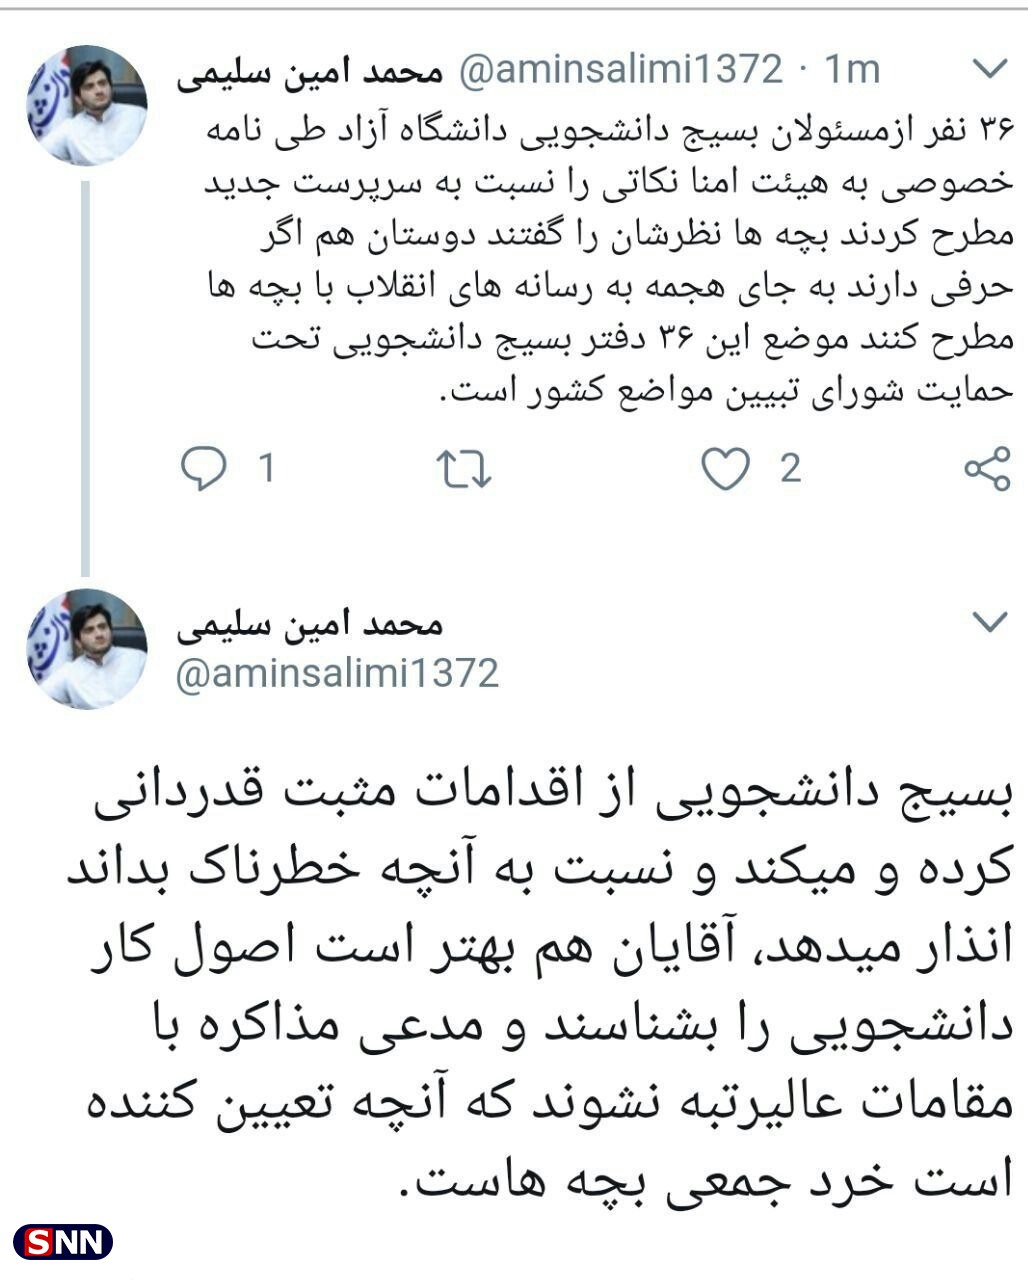 موضع مطرح شده در مورد طهرانچی تحت حمایت شورای تبیین مواضع بسیج دانشجویی است